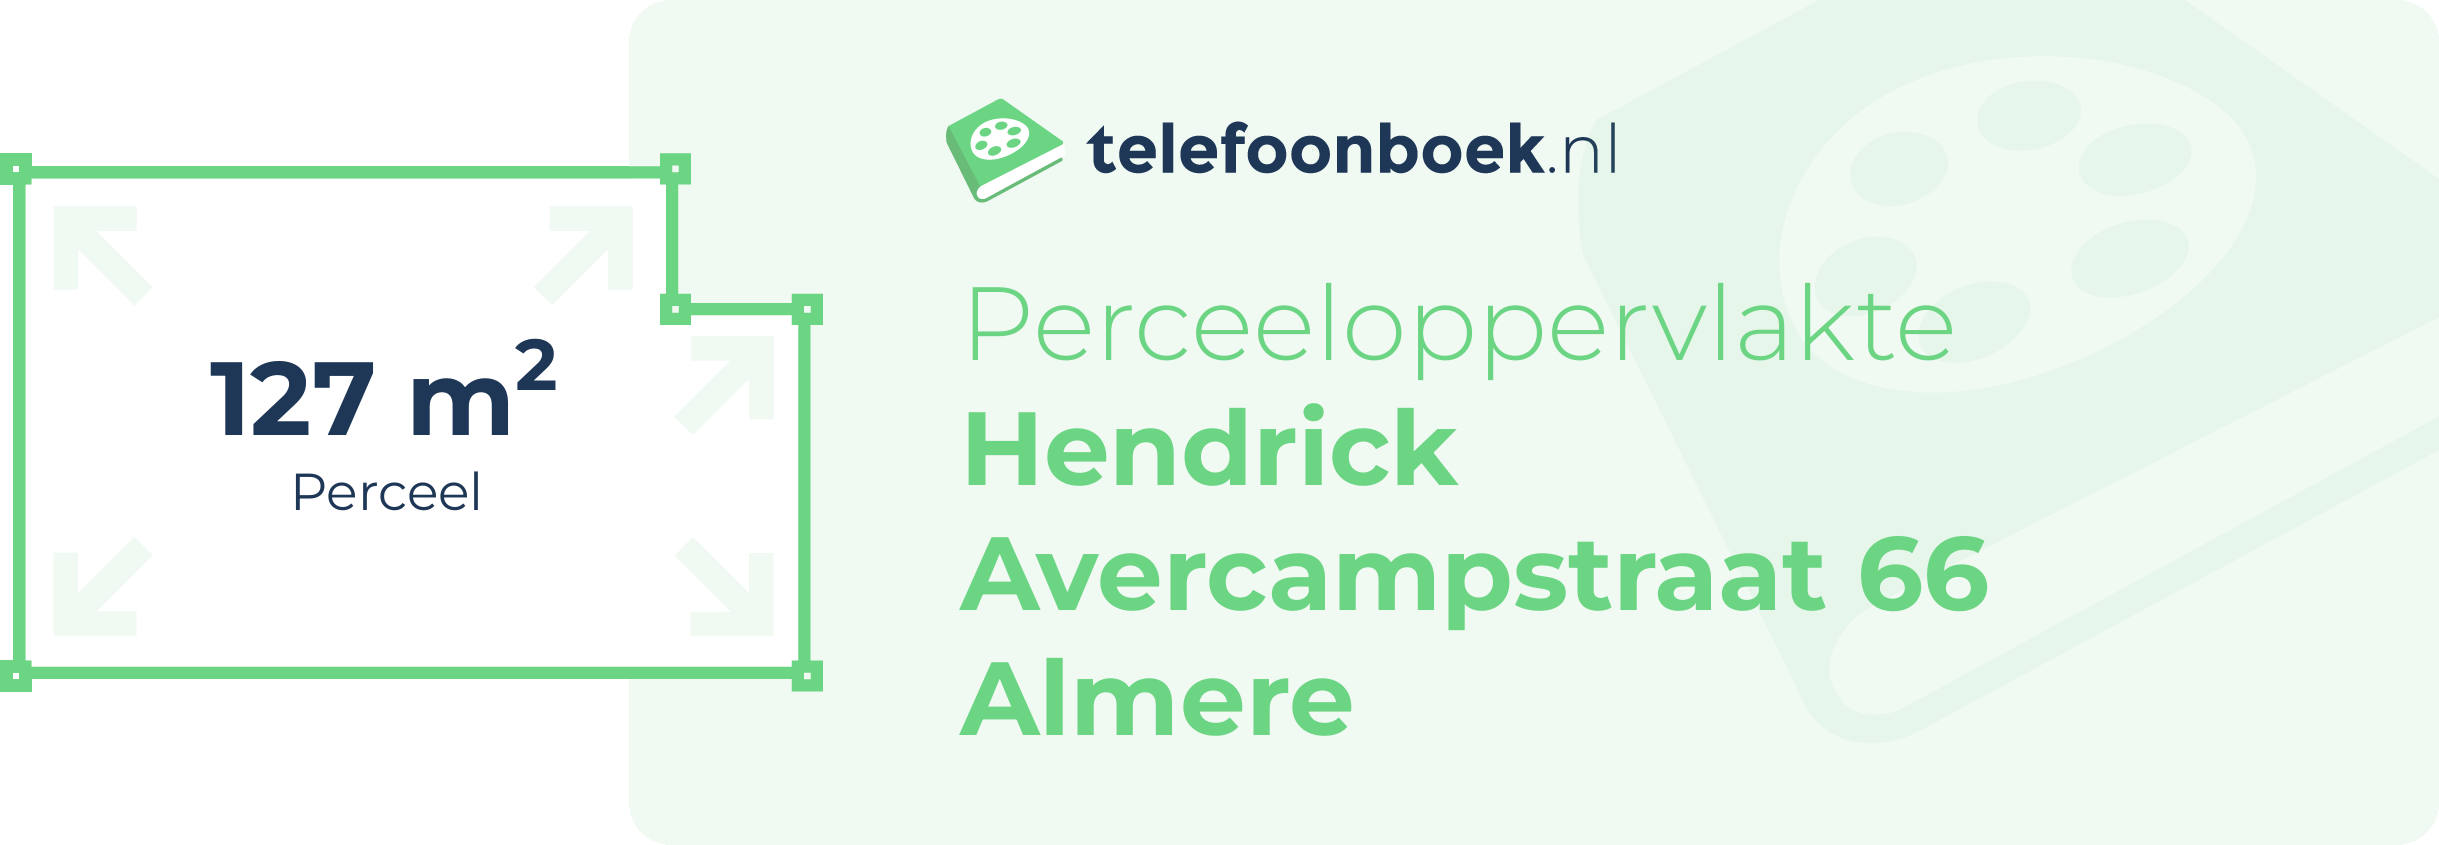 Perceeloppervlakte Hendrick Avercampstraat 66 Almere